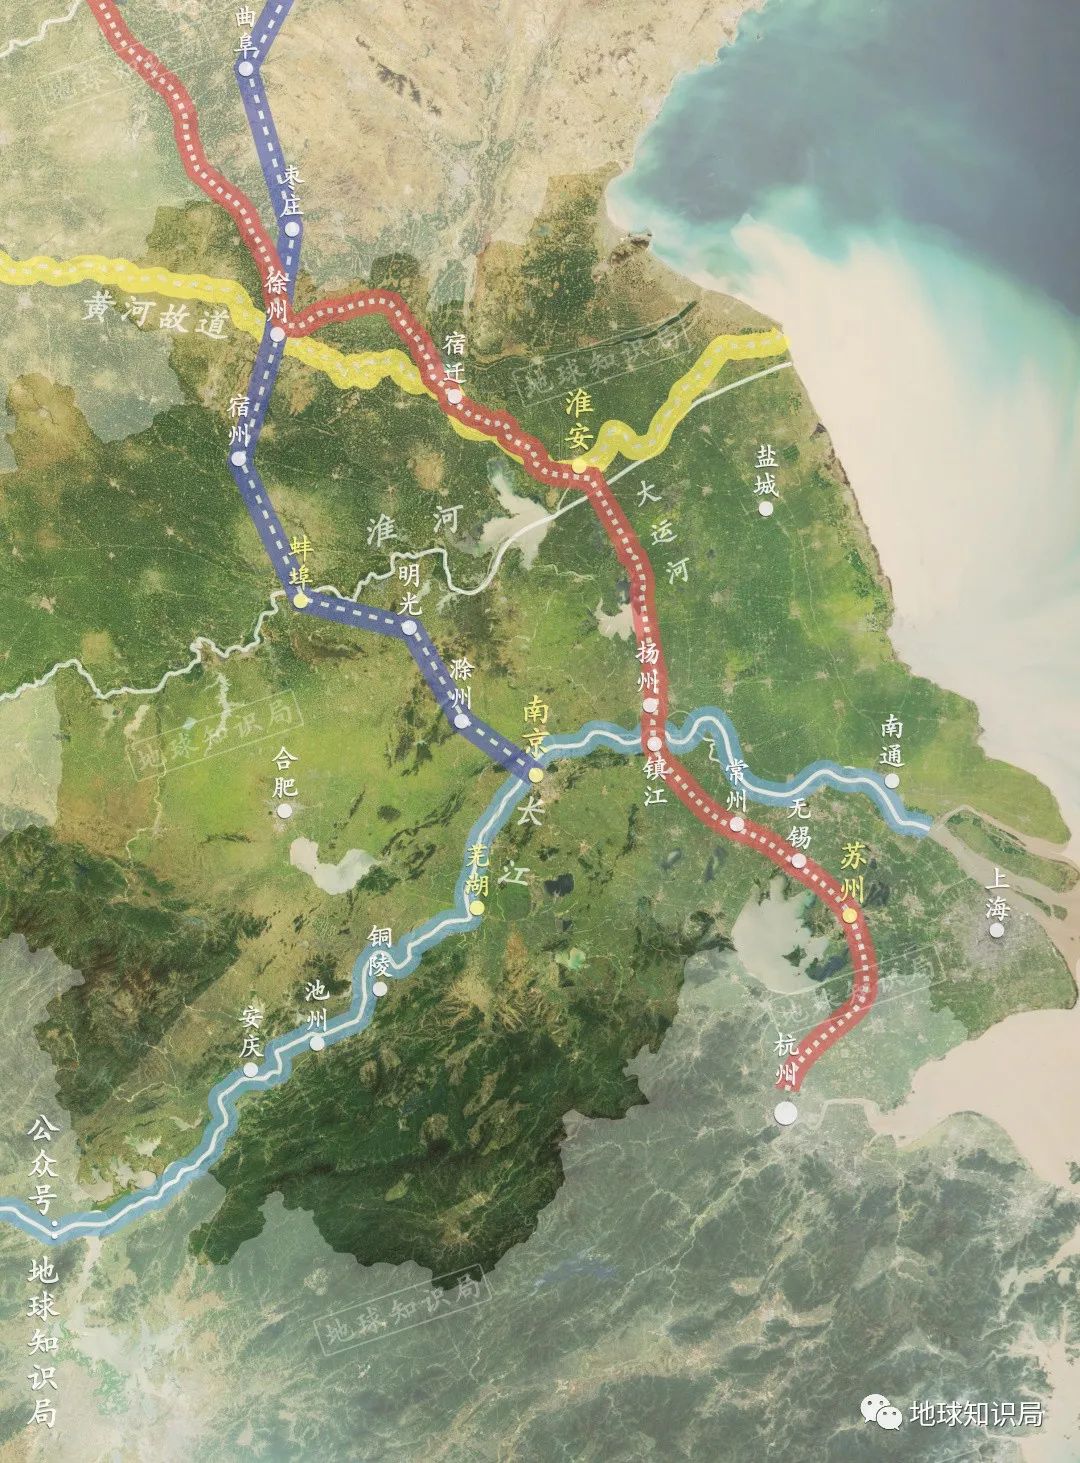 由于中国古代南北向交通依赖运河</p><p>导致运河未经过的地区通达程度较低</p><p>但随着一批南北向铁路的建设</p><p>一大批新城市开始崛起，蚌埠就是一个